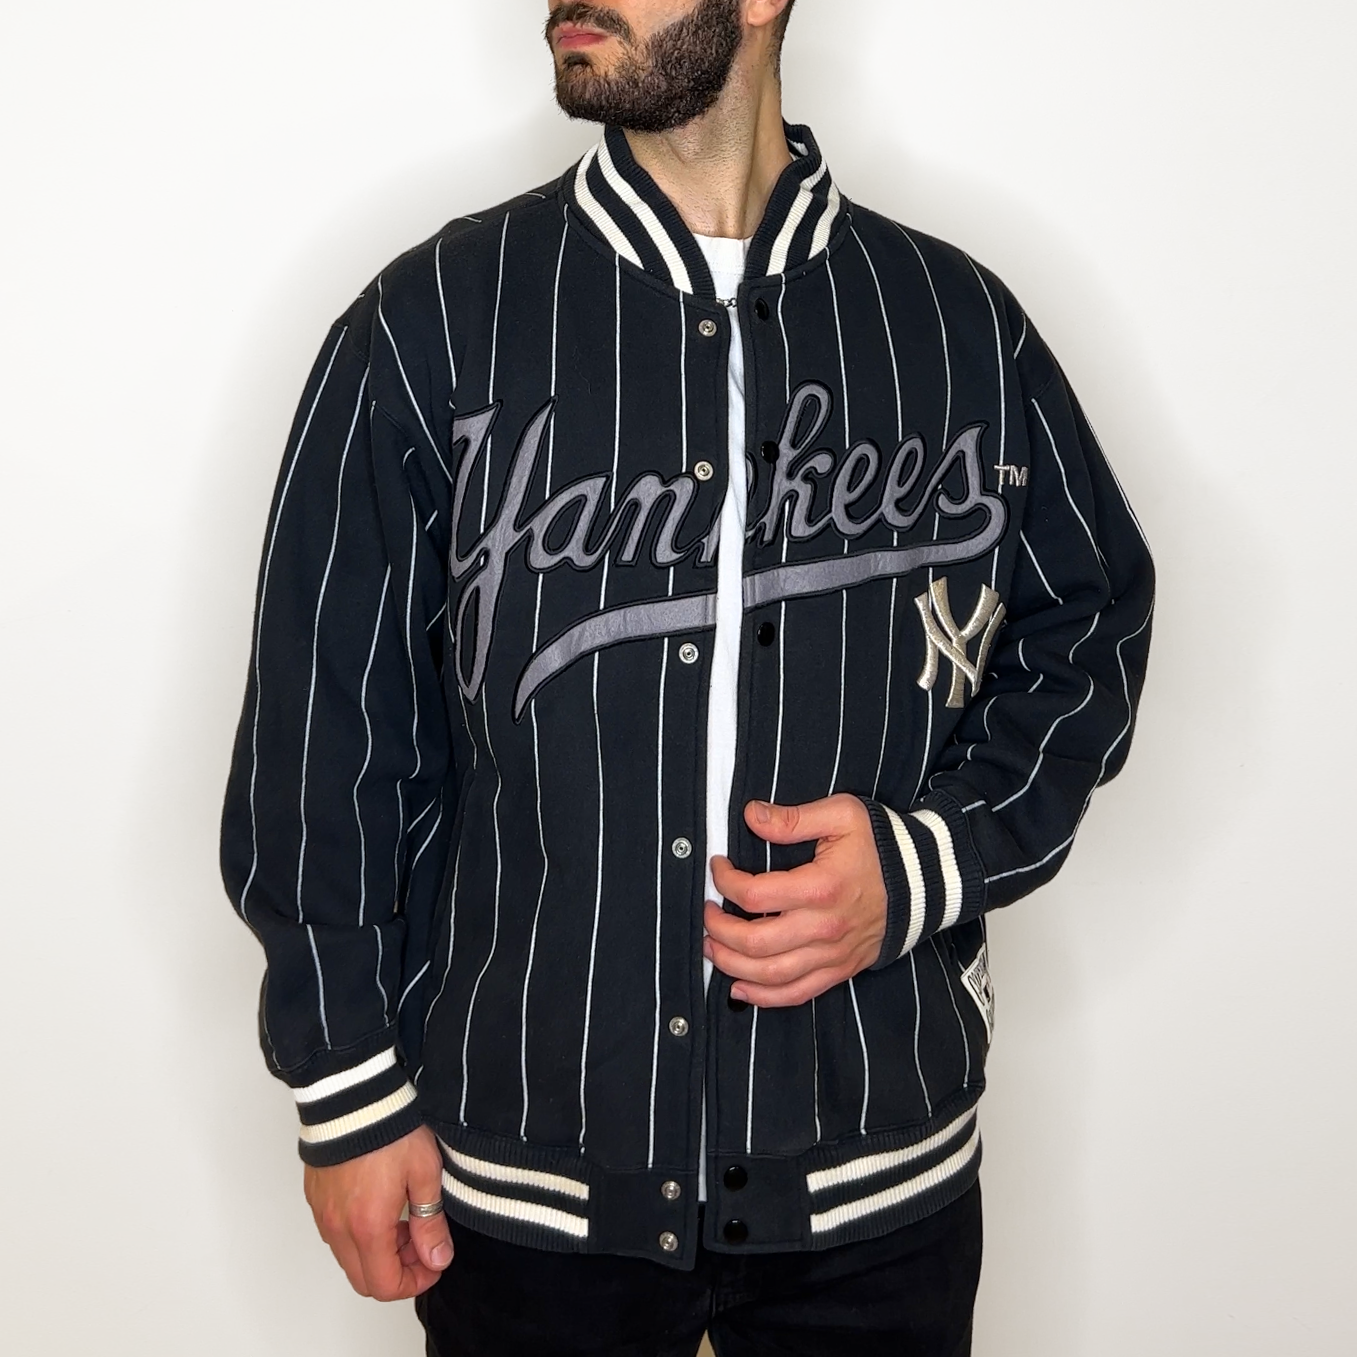 Vintage Yankees Cooperstown Jacket